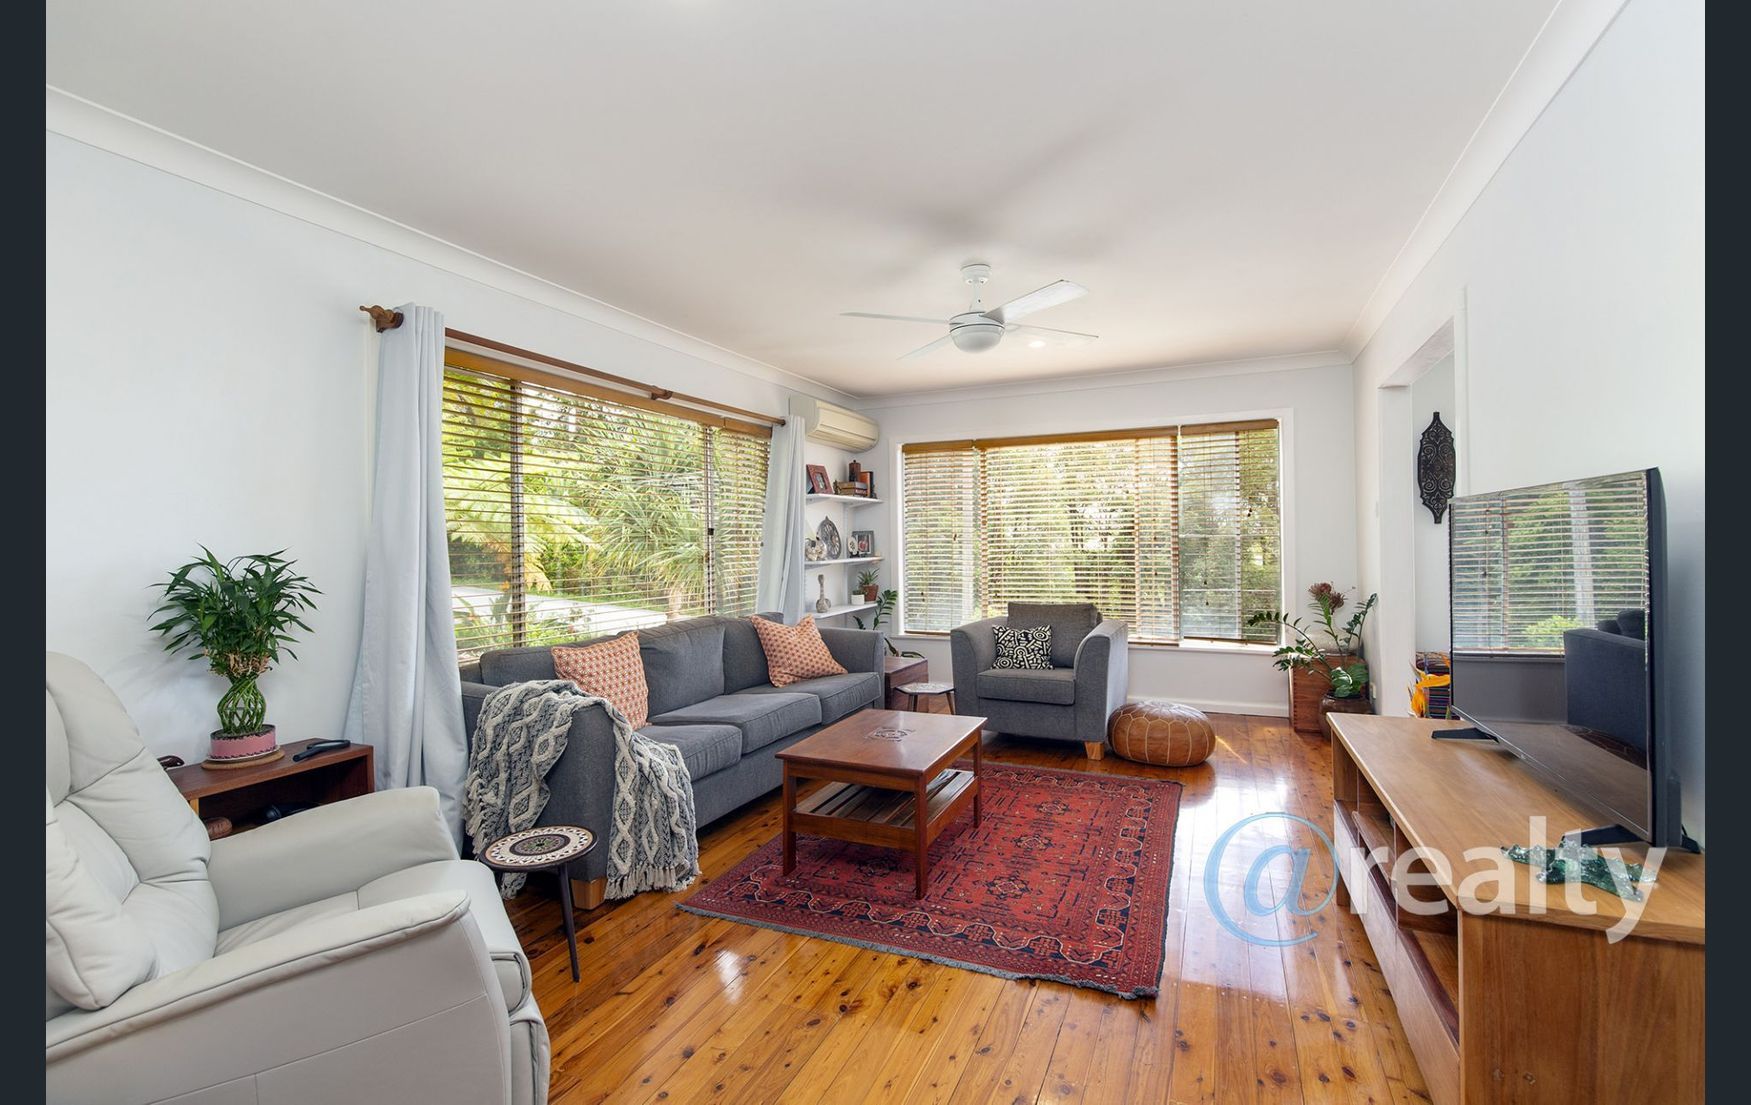 Property image of 13 Lackey Street Nambucca Heads NSW 2448 #3 | Real Estate Nambucca